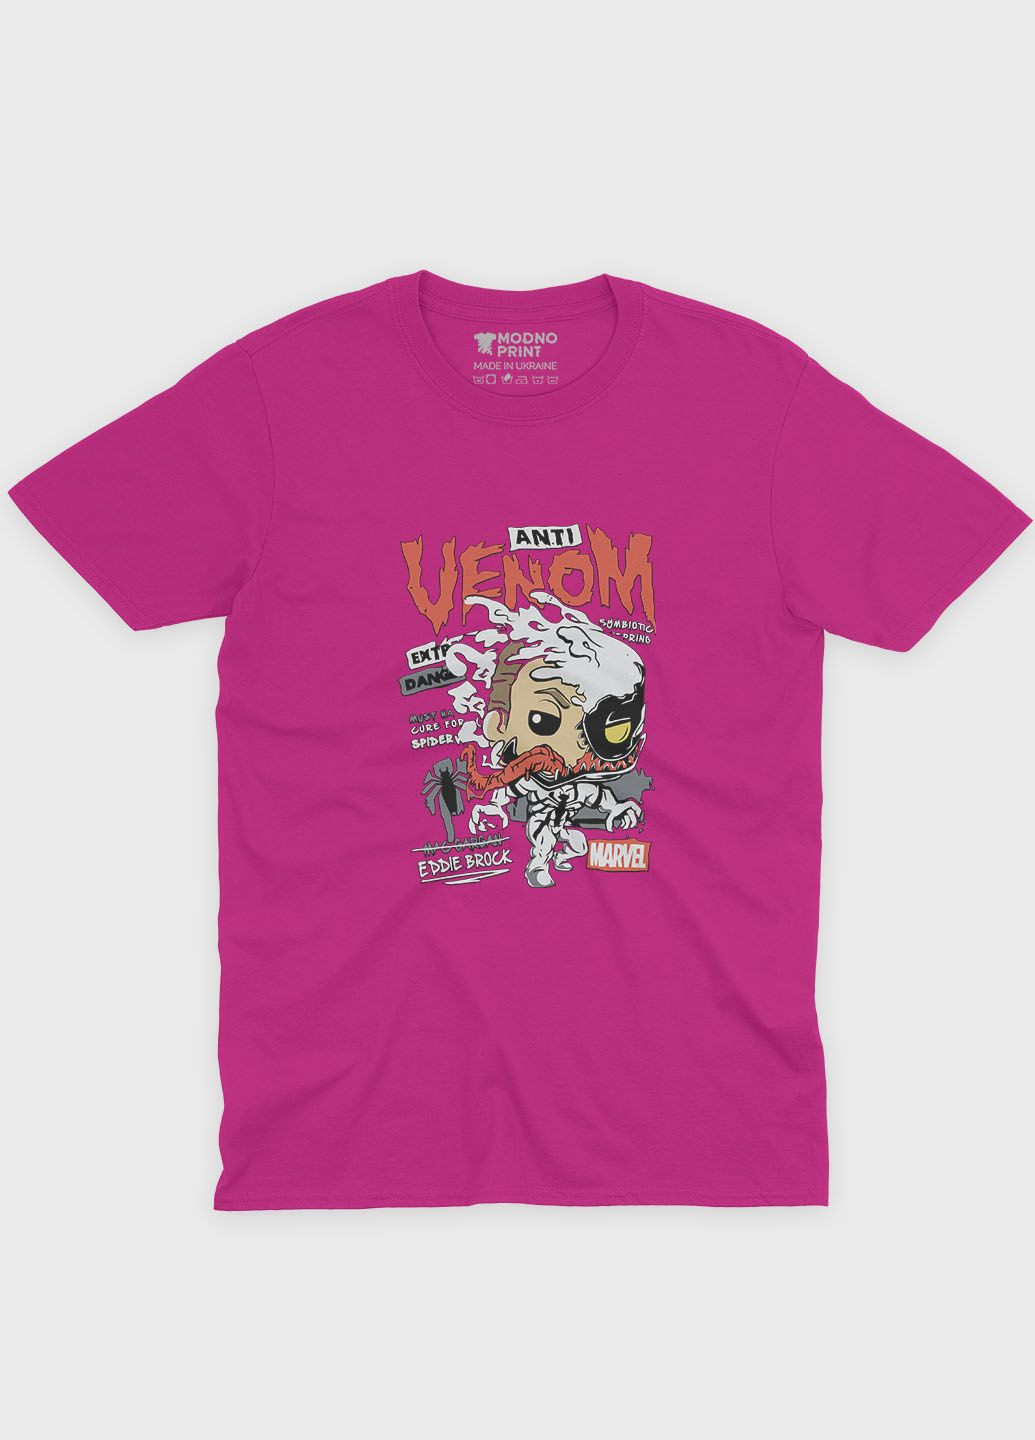 Розовая демисезонная футболка для девочки с принтом супервора - веном (ts001-1-fuxj-006-013-018-g) Modno